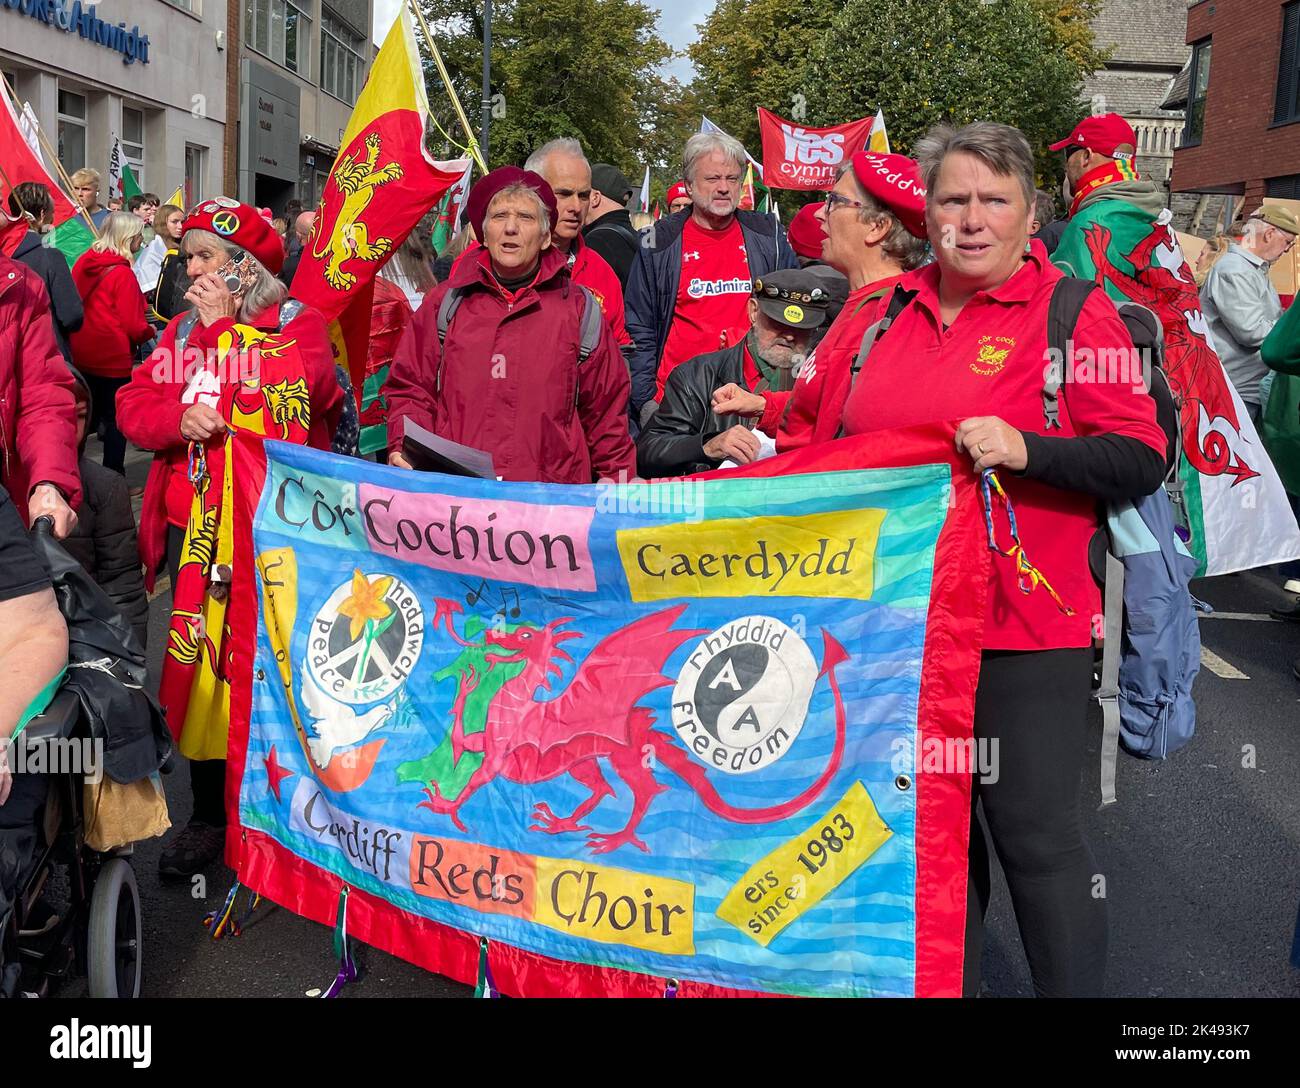 Die Menschen nehmen an einem marsch Teil, der die Unabhängigkeit Waliss im Zentrum von Cardiff, Wales, fordert. Bilddatum: Samstag, 1. Oktober 2022. Stockfoto